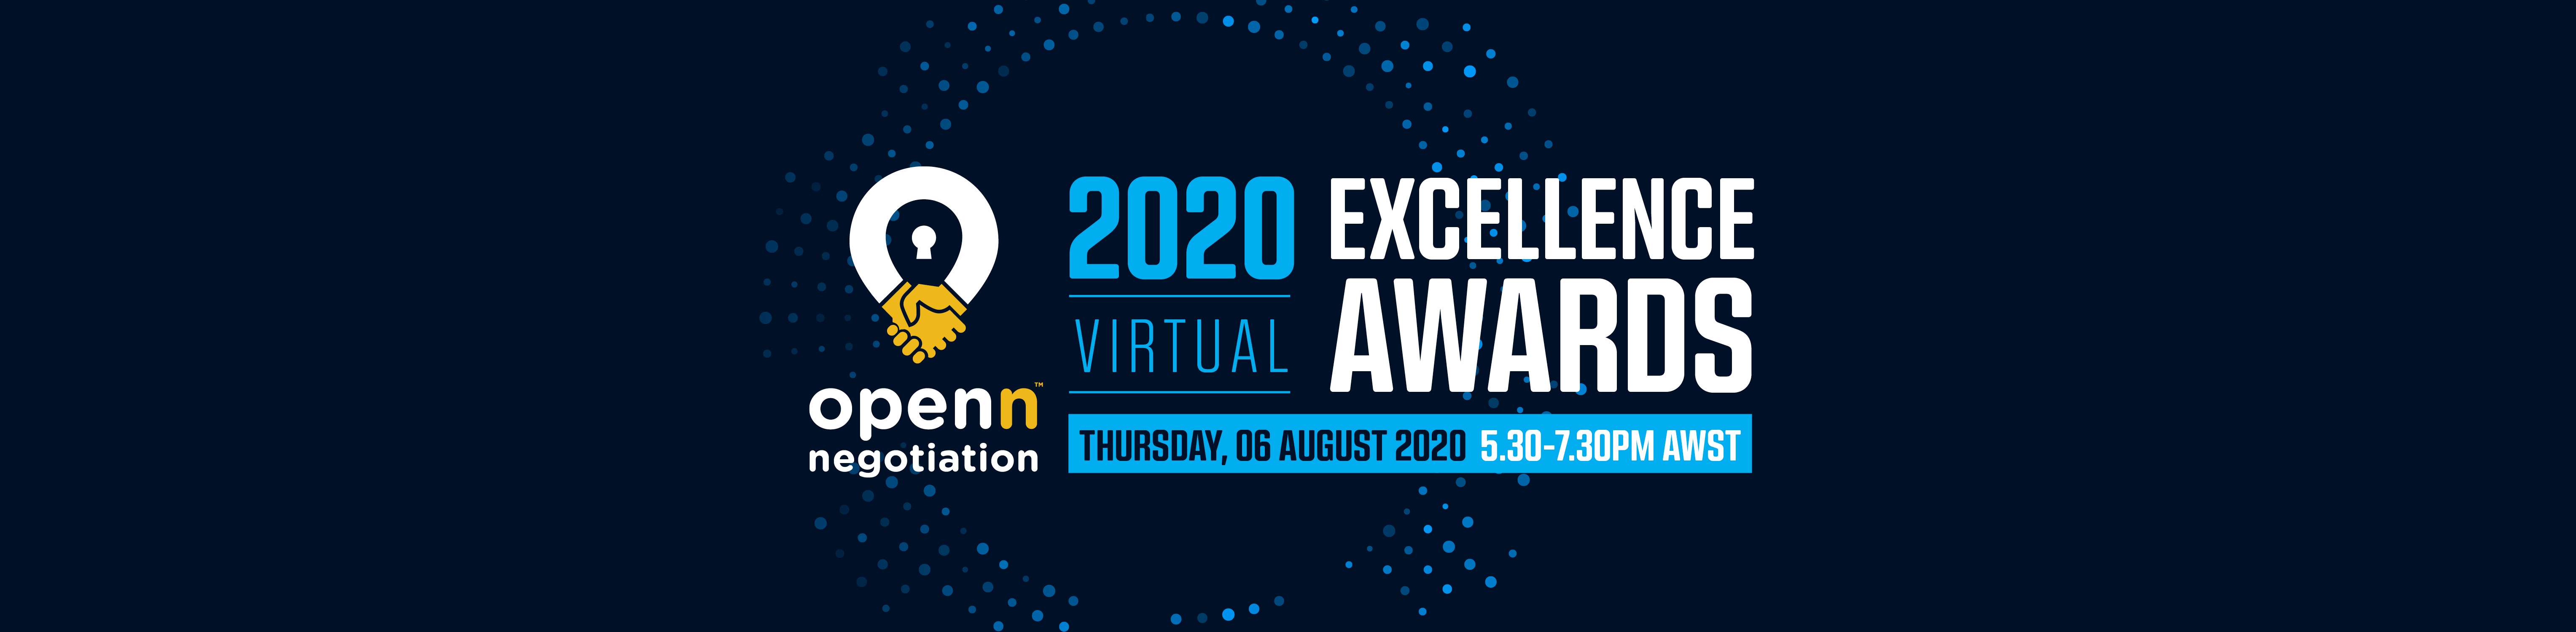 Openn Virtual Excellence Awards